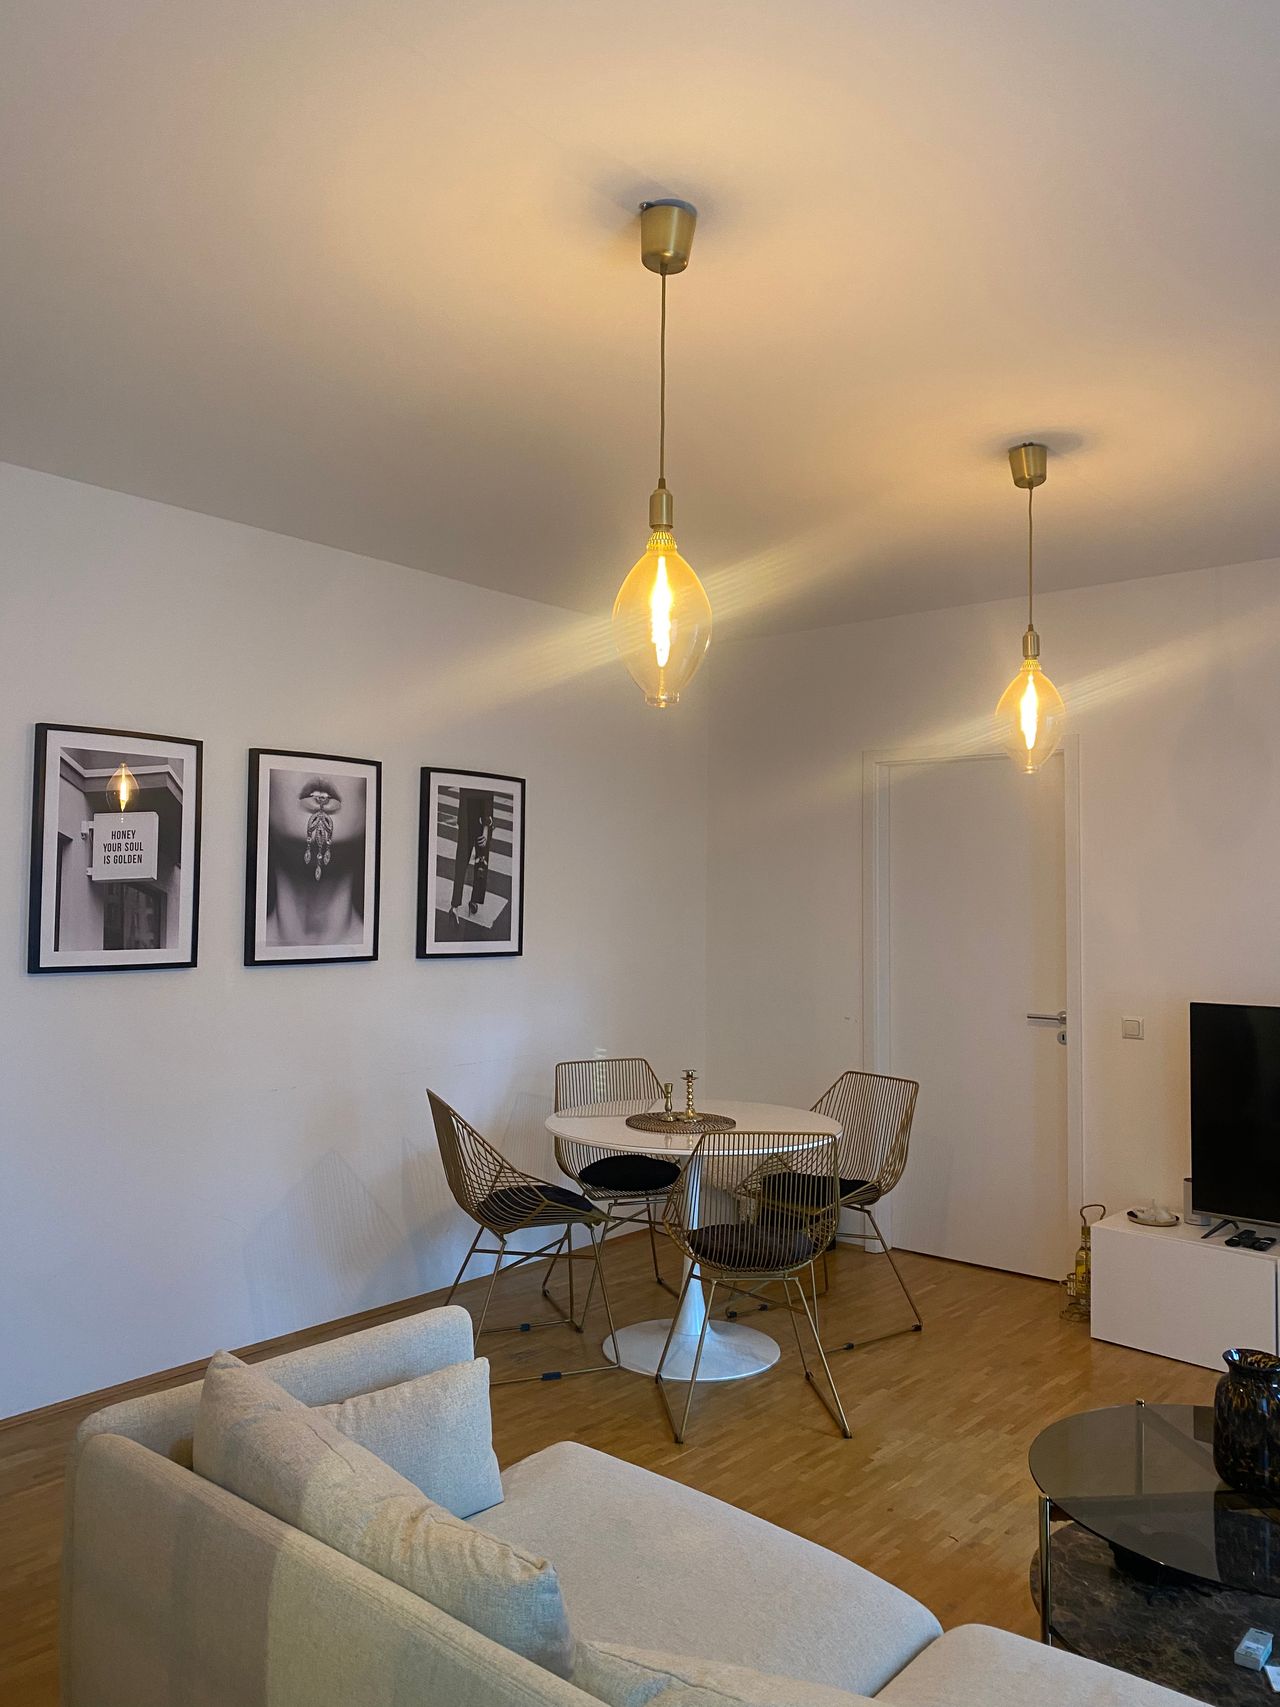 Modern, fully furnished loft located in Friedrichshain